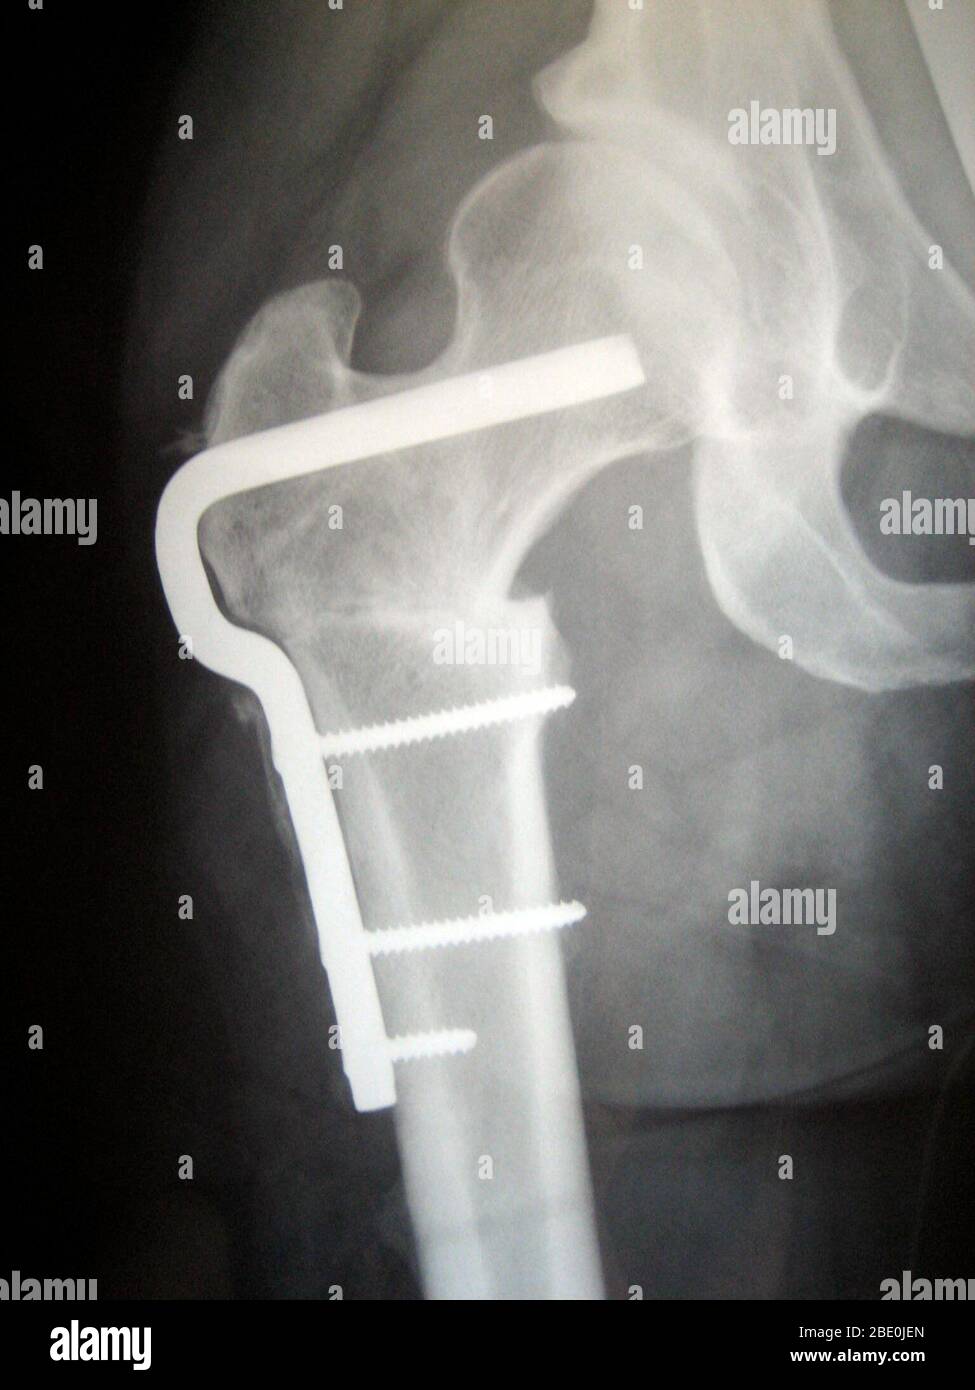 X-ray di osteotomia femorale di hardware per la corretta rotazione femorale causato dalla displasia dell'anca. Questo x-ray mostra il fianco destro in un paziente di sesso femminile nei suoi primi anni trenta. Foto Stock